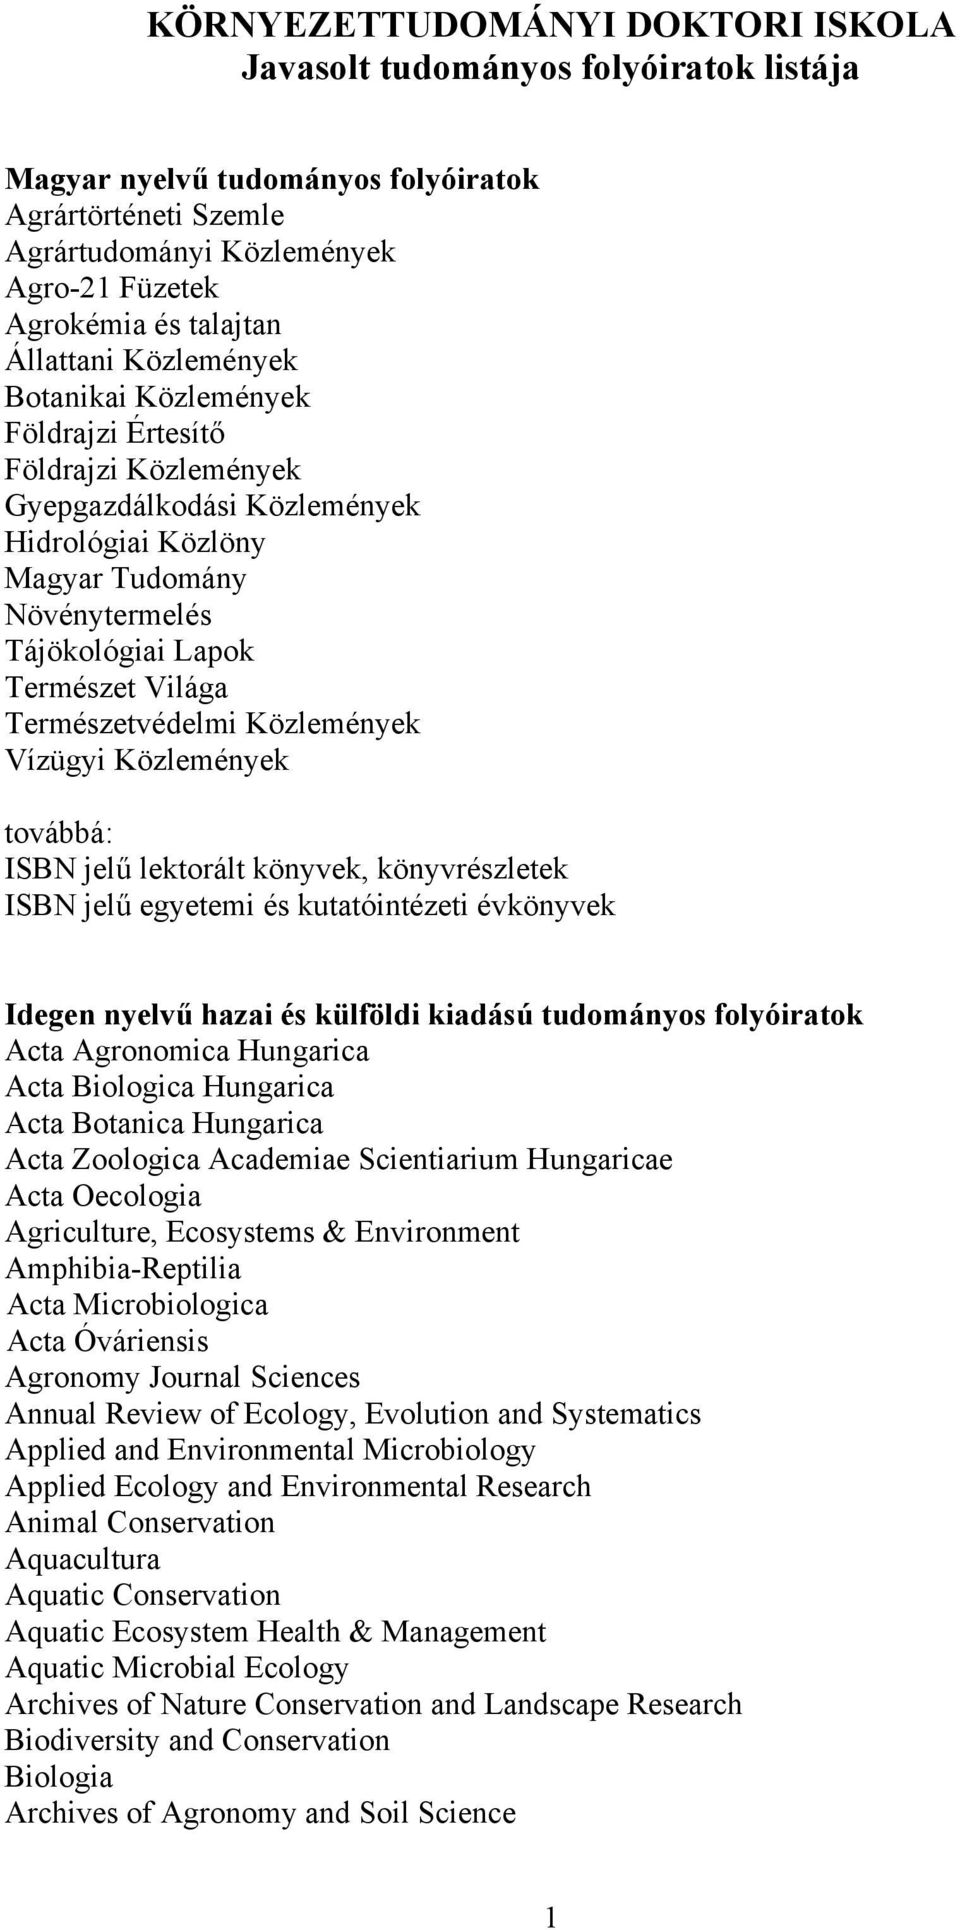 Világa Természetvédelmi Közlemények Vízügyi Közlemények továbbá: ISBN jelű lektorált könyvek, könyvrészletek ISBN jelű egyetemi és kutatóintézeti évkönyvek Idegen nyelvű hazai és külföldi kiadású